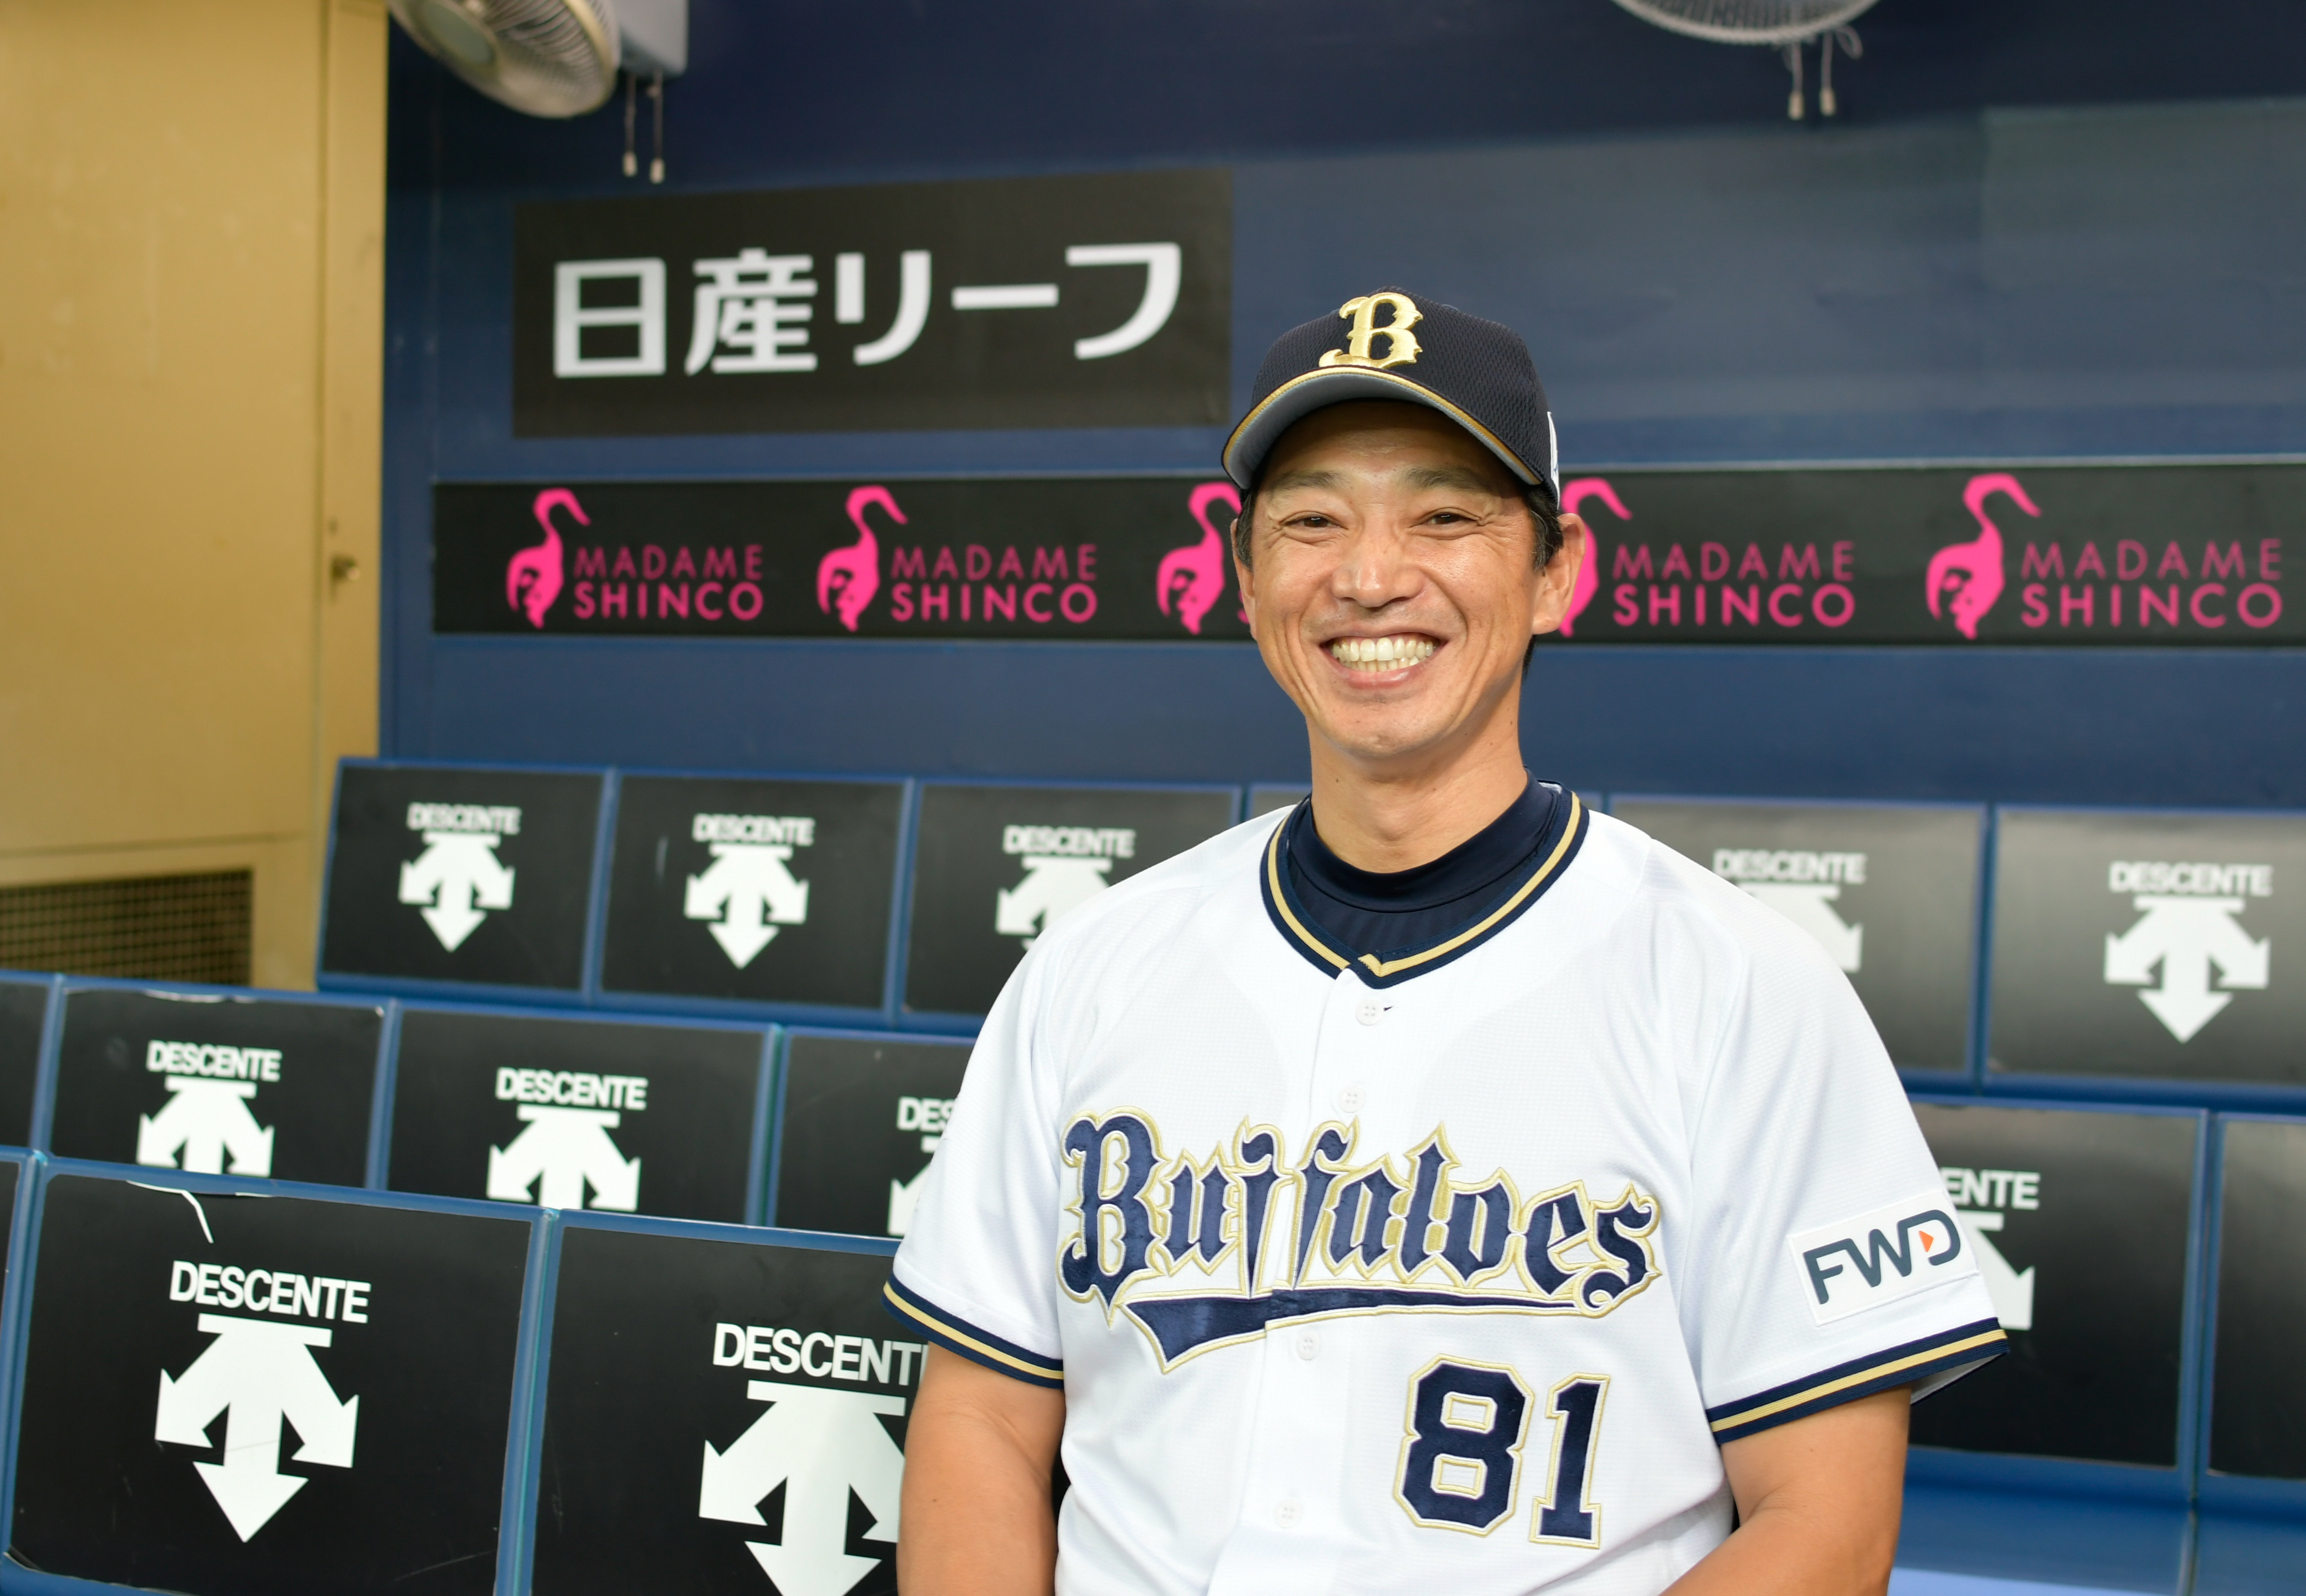 オリックス・バファローズ一軍野手総合コーチ兼打撃コーチを務める田口壮さんの笑顔でこちらを見ている写真